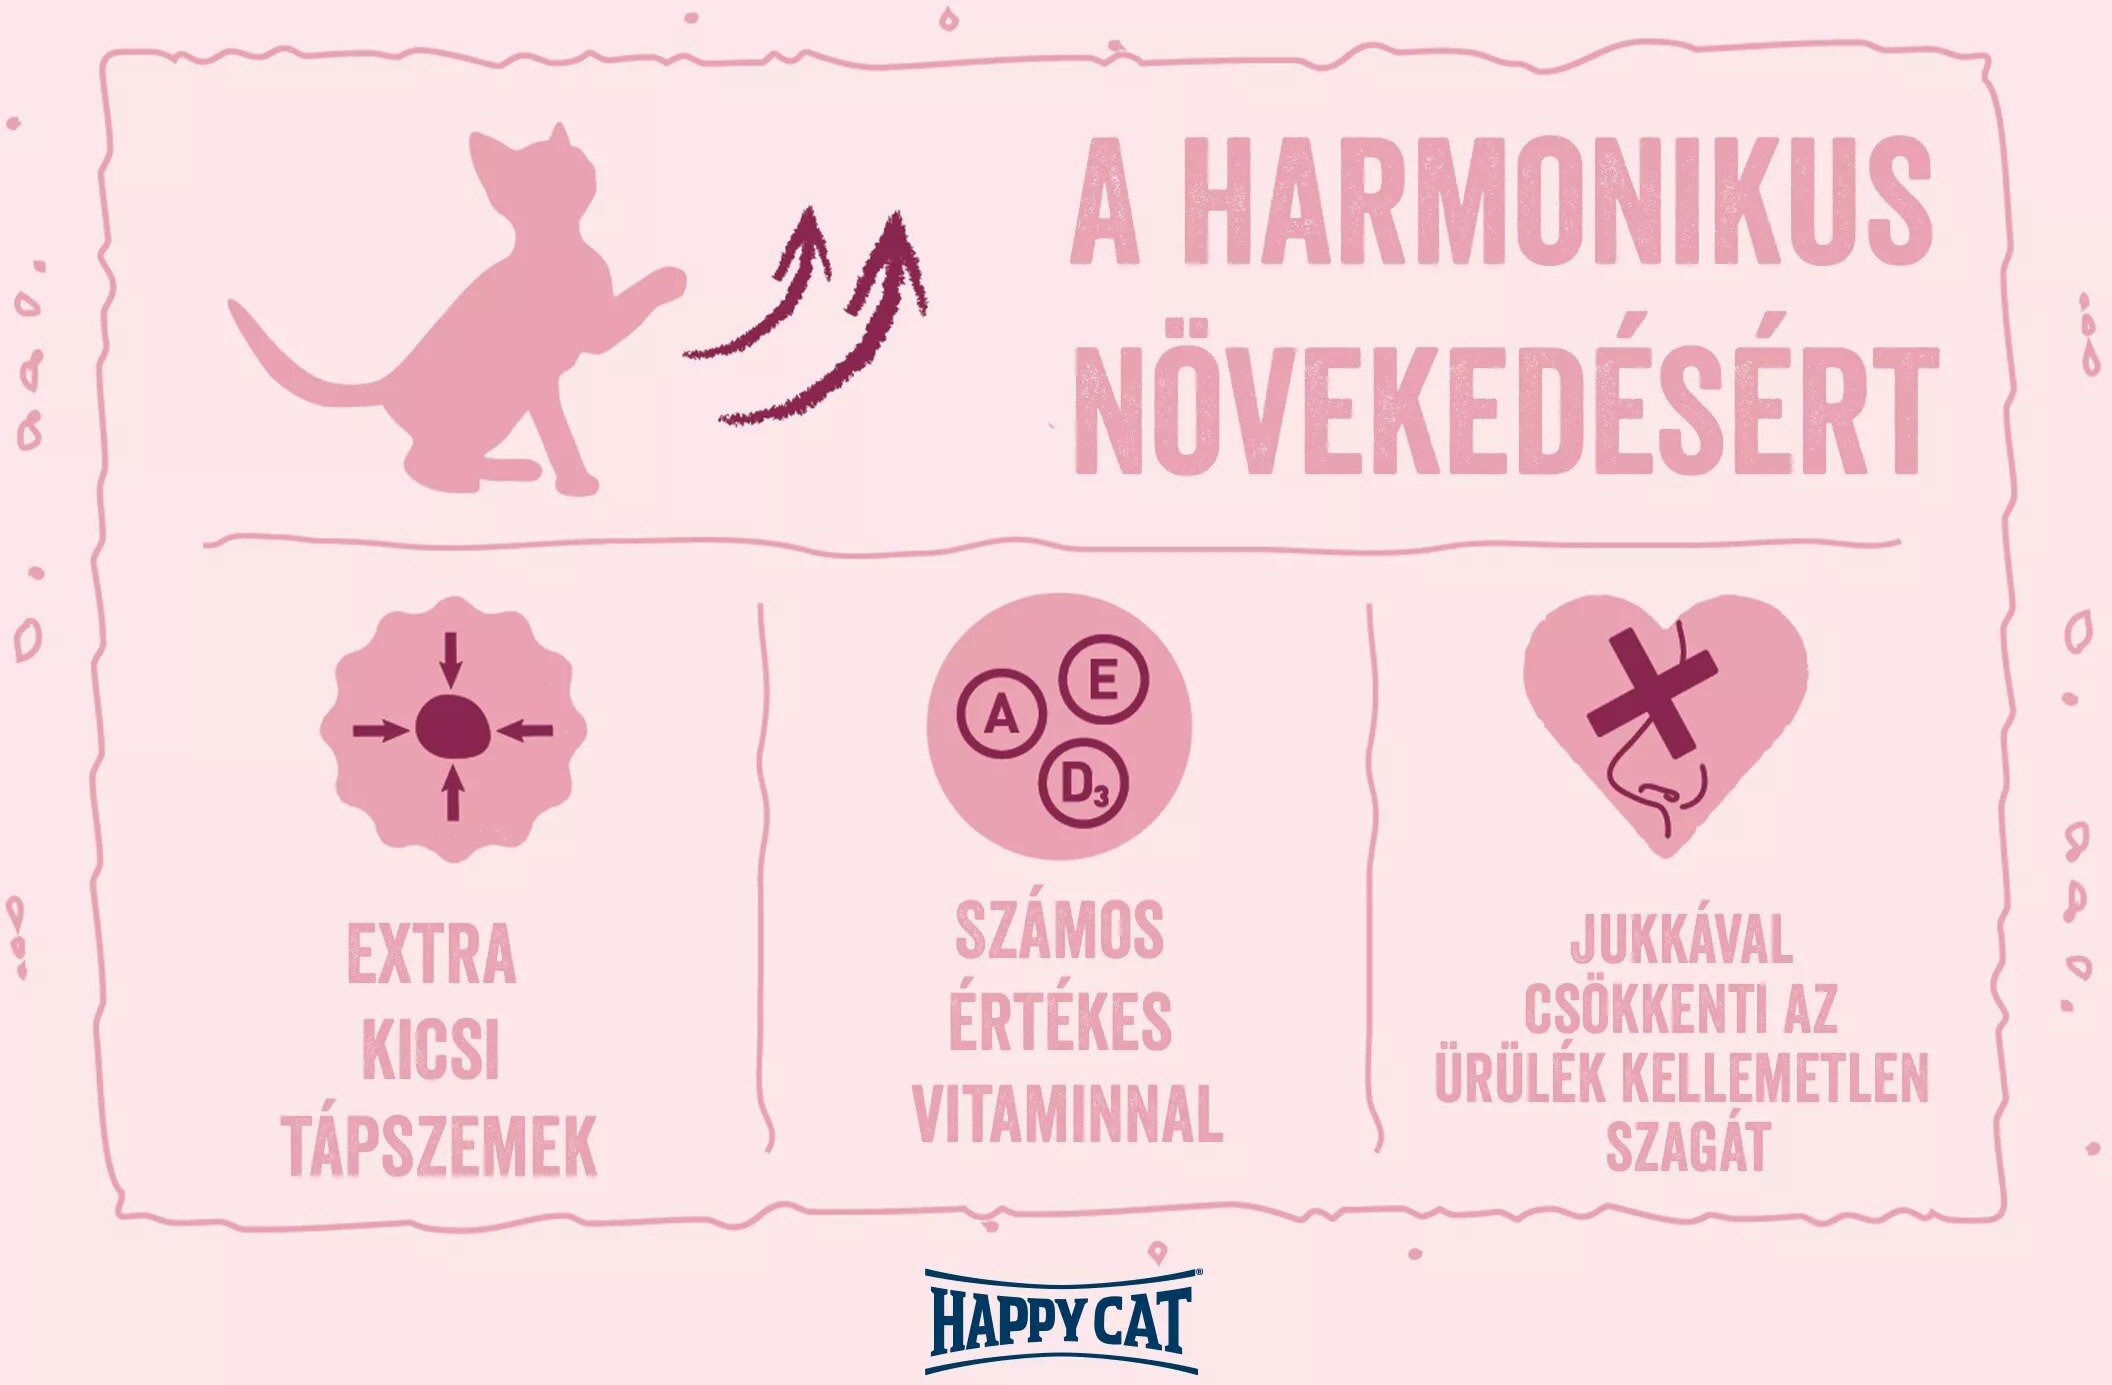 Happy Cat Minkas Care Kitten - Hrană pentru pisoi - zoom